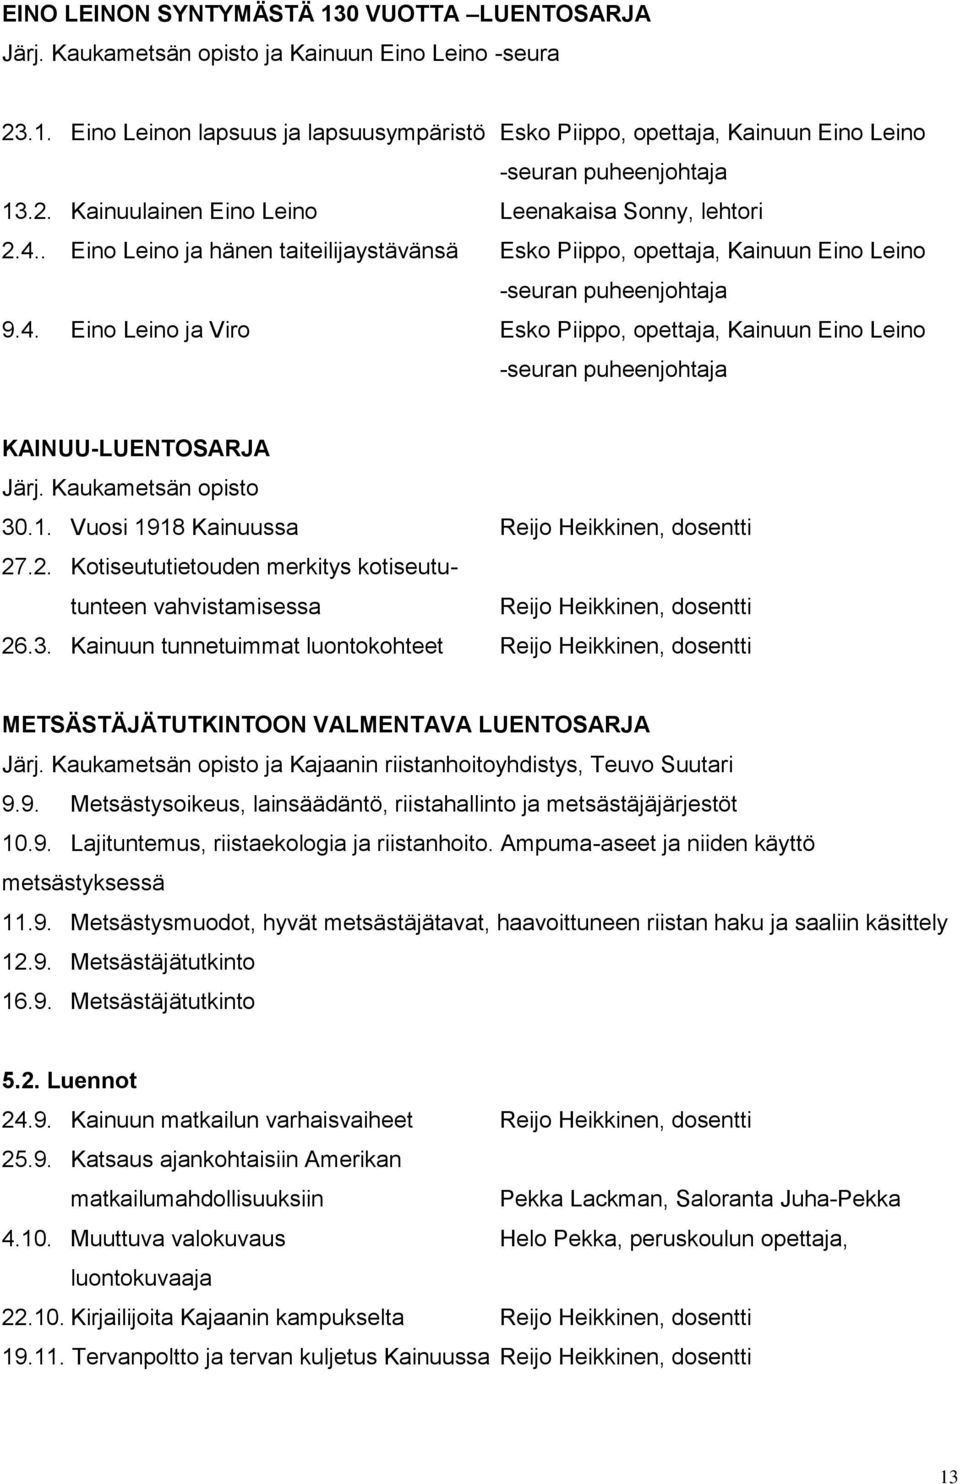 Kaukametsän opisto 30.1. Vuosi 1918 Kainuussa Reijo Heikkinen, dosentti 27.2. Kotiseututietouden merkitys kotiseututunteen vahvistamisessa Reijo Heikkinen, dosentti 26.3. Kainuun tunnetuimmat luontokohteet Reijo Heikkinen, dosentti METSÄSTÄJÄTUTKINTOON VALMENTAVA LUENTOSARJA Järj.